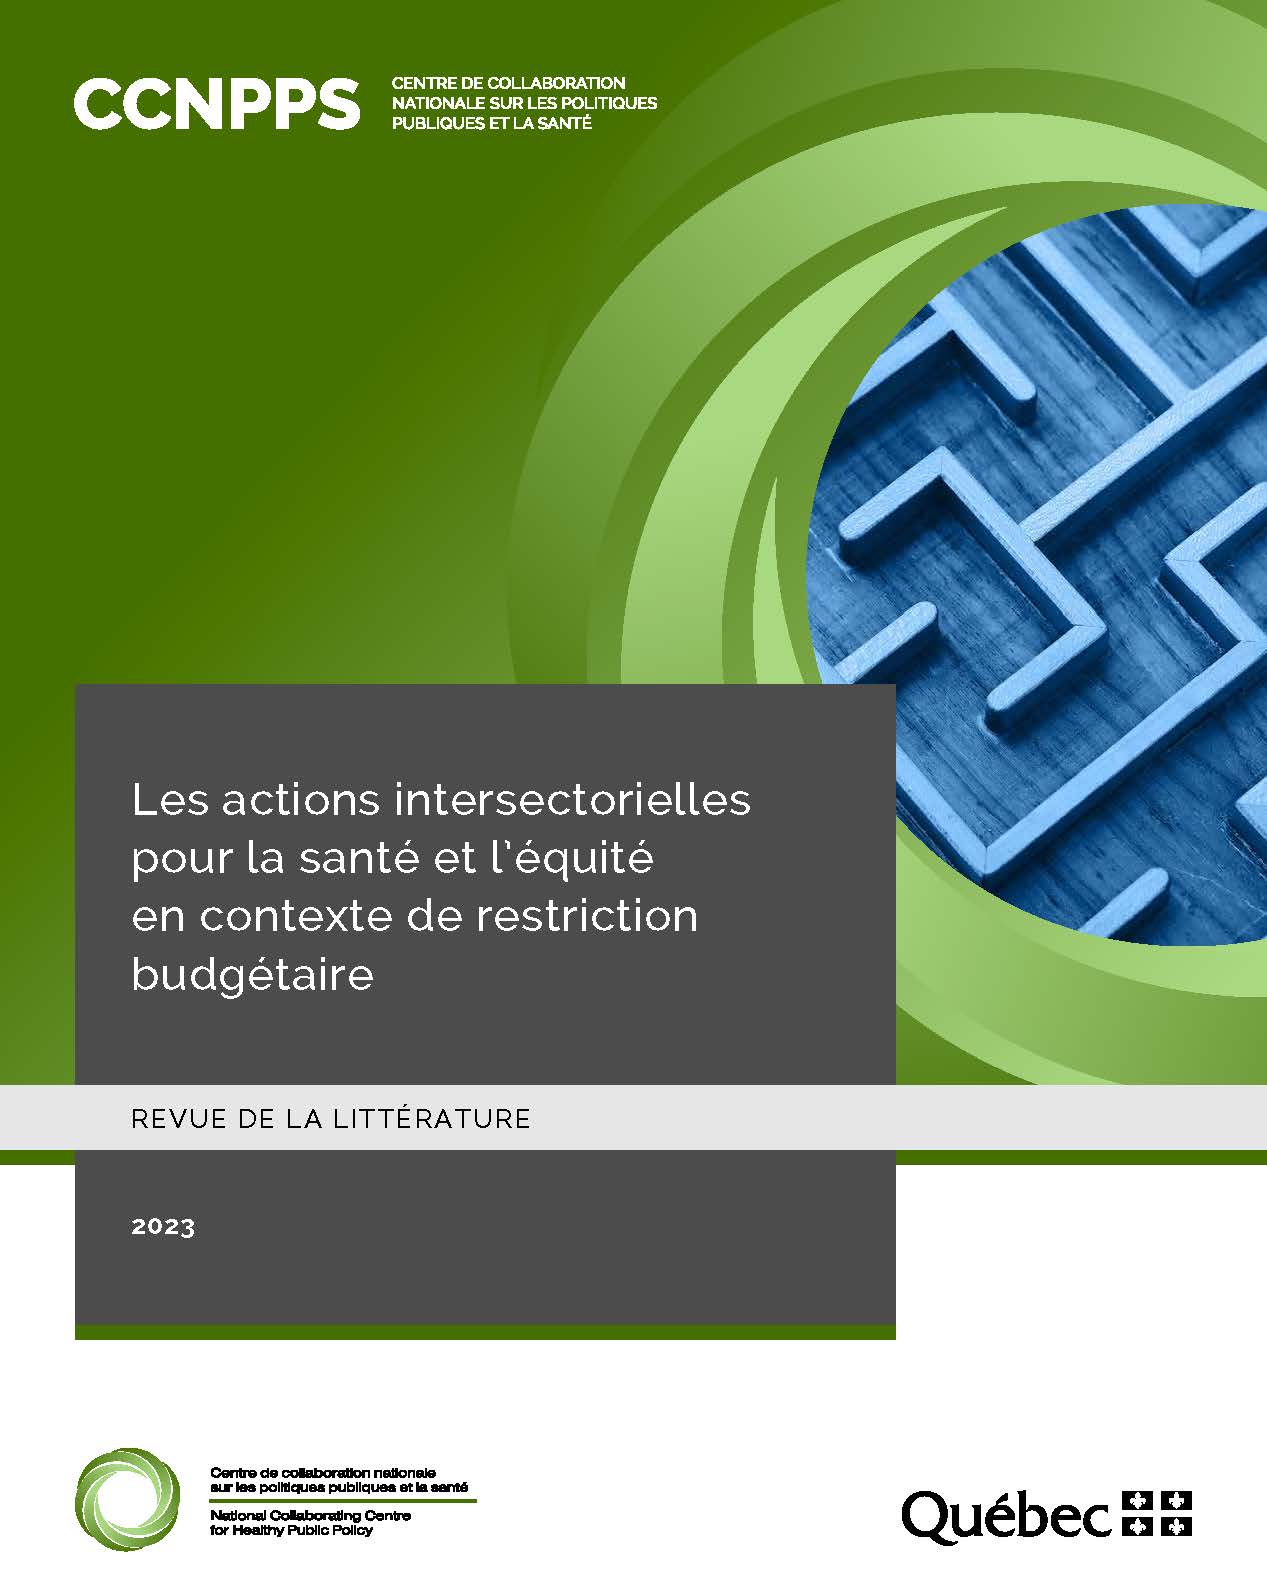 Image de la page couverture de la publication intitulée : Les actions intersectorielles pour la santé et l’équité en contexte de restriction budgétaire.